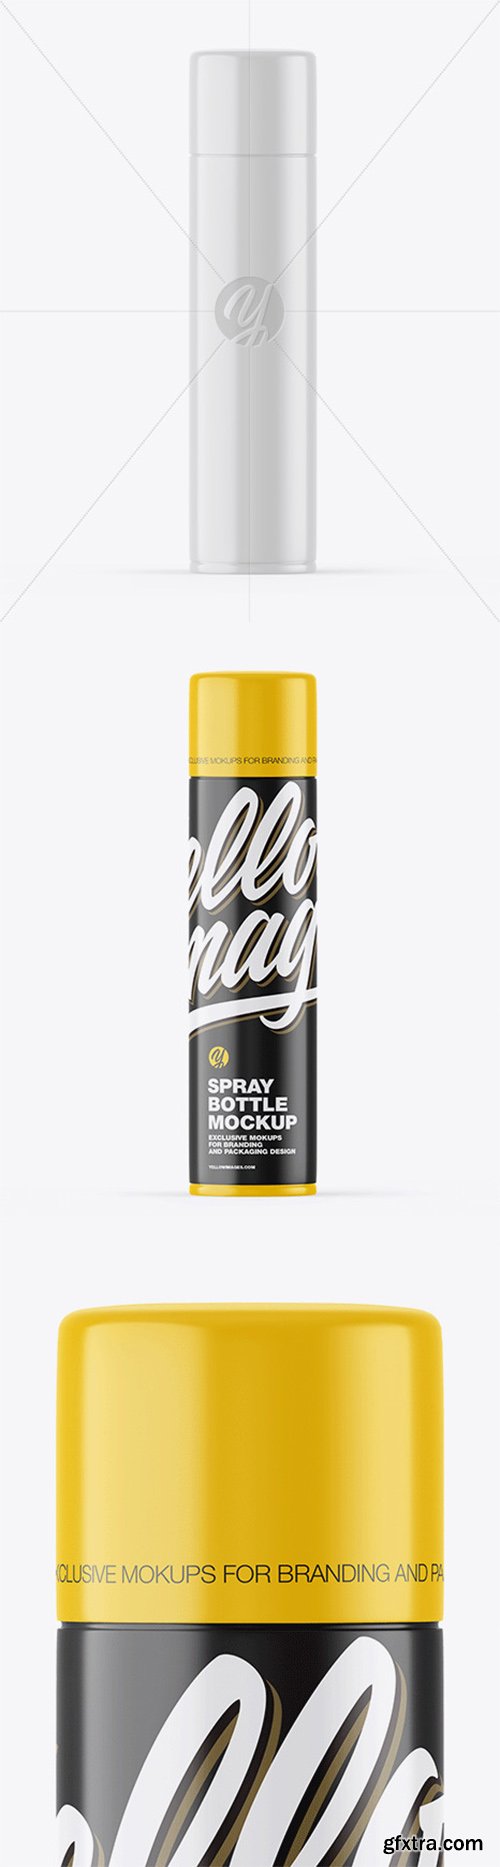 Glossy Spray Bottle Mockup 52119